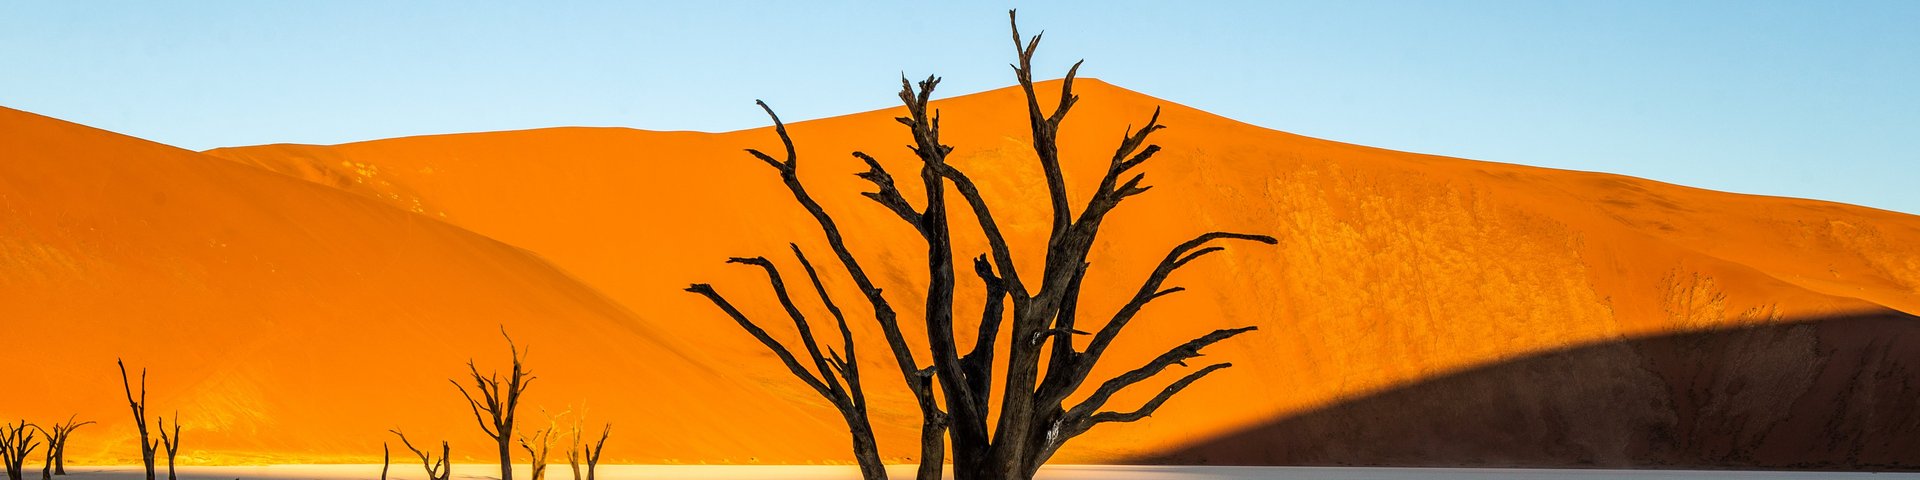 Im Sonnenschein rot leuchtende Dünen der Namib-Wüste in Namibia